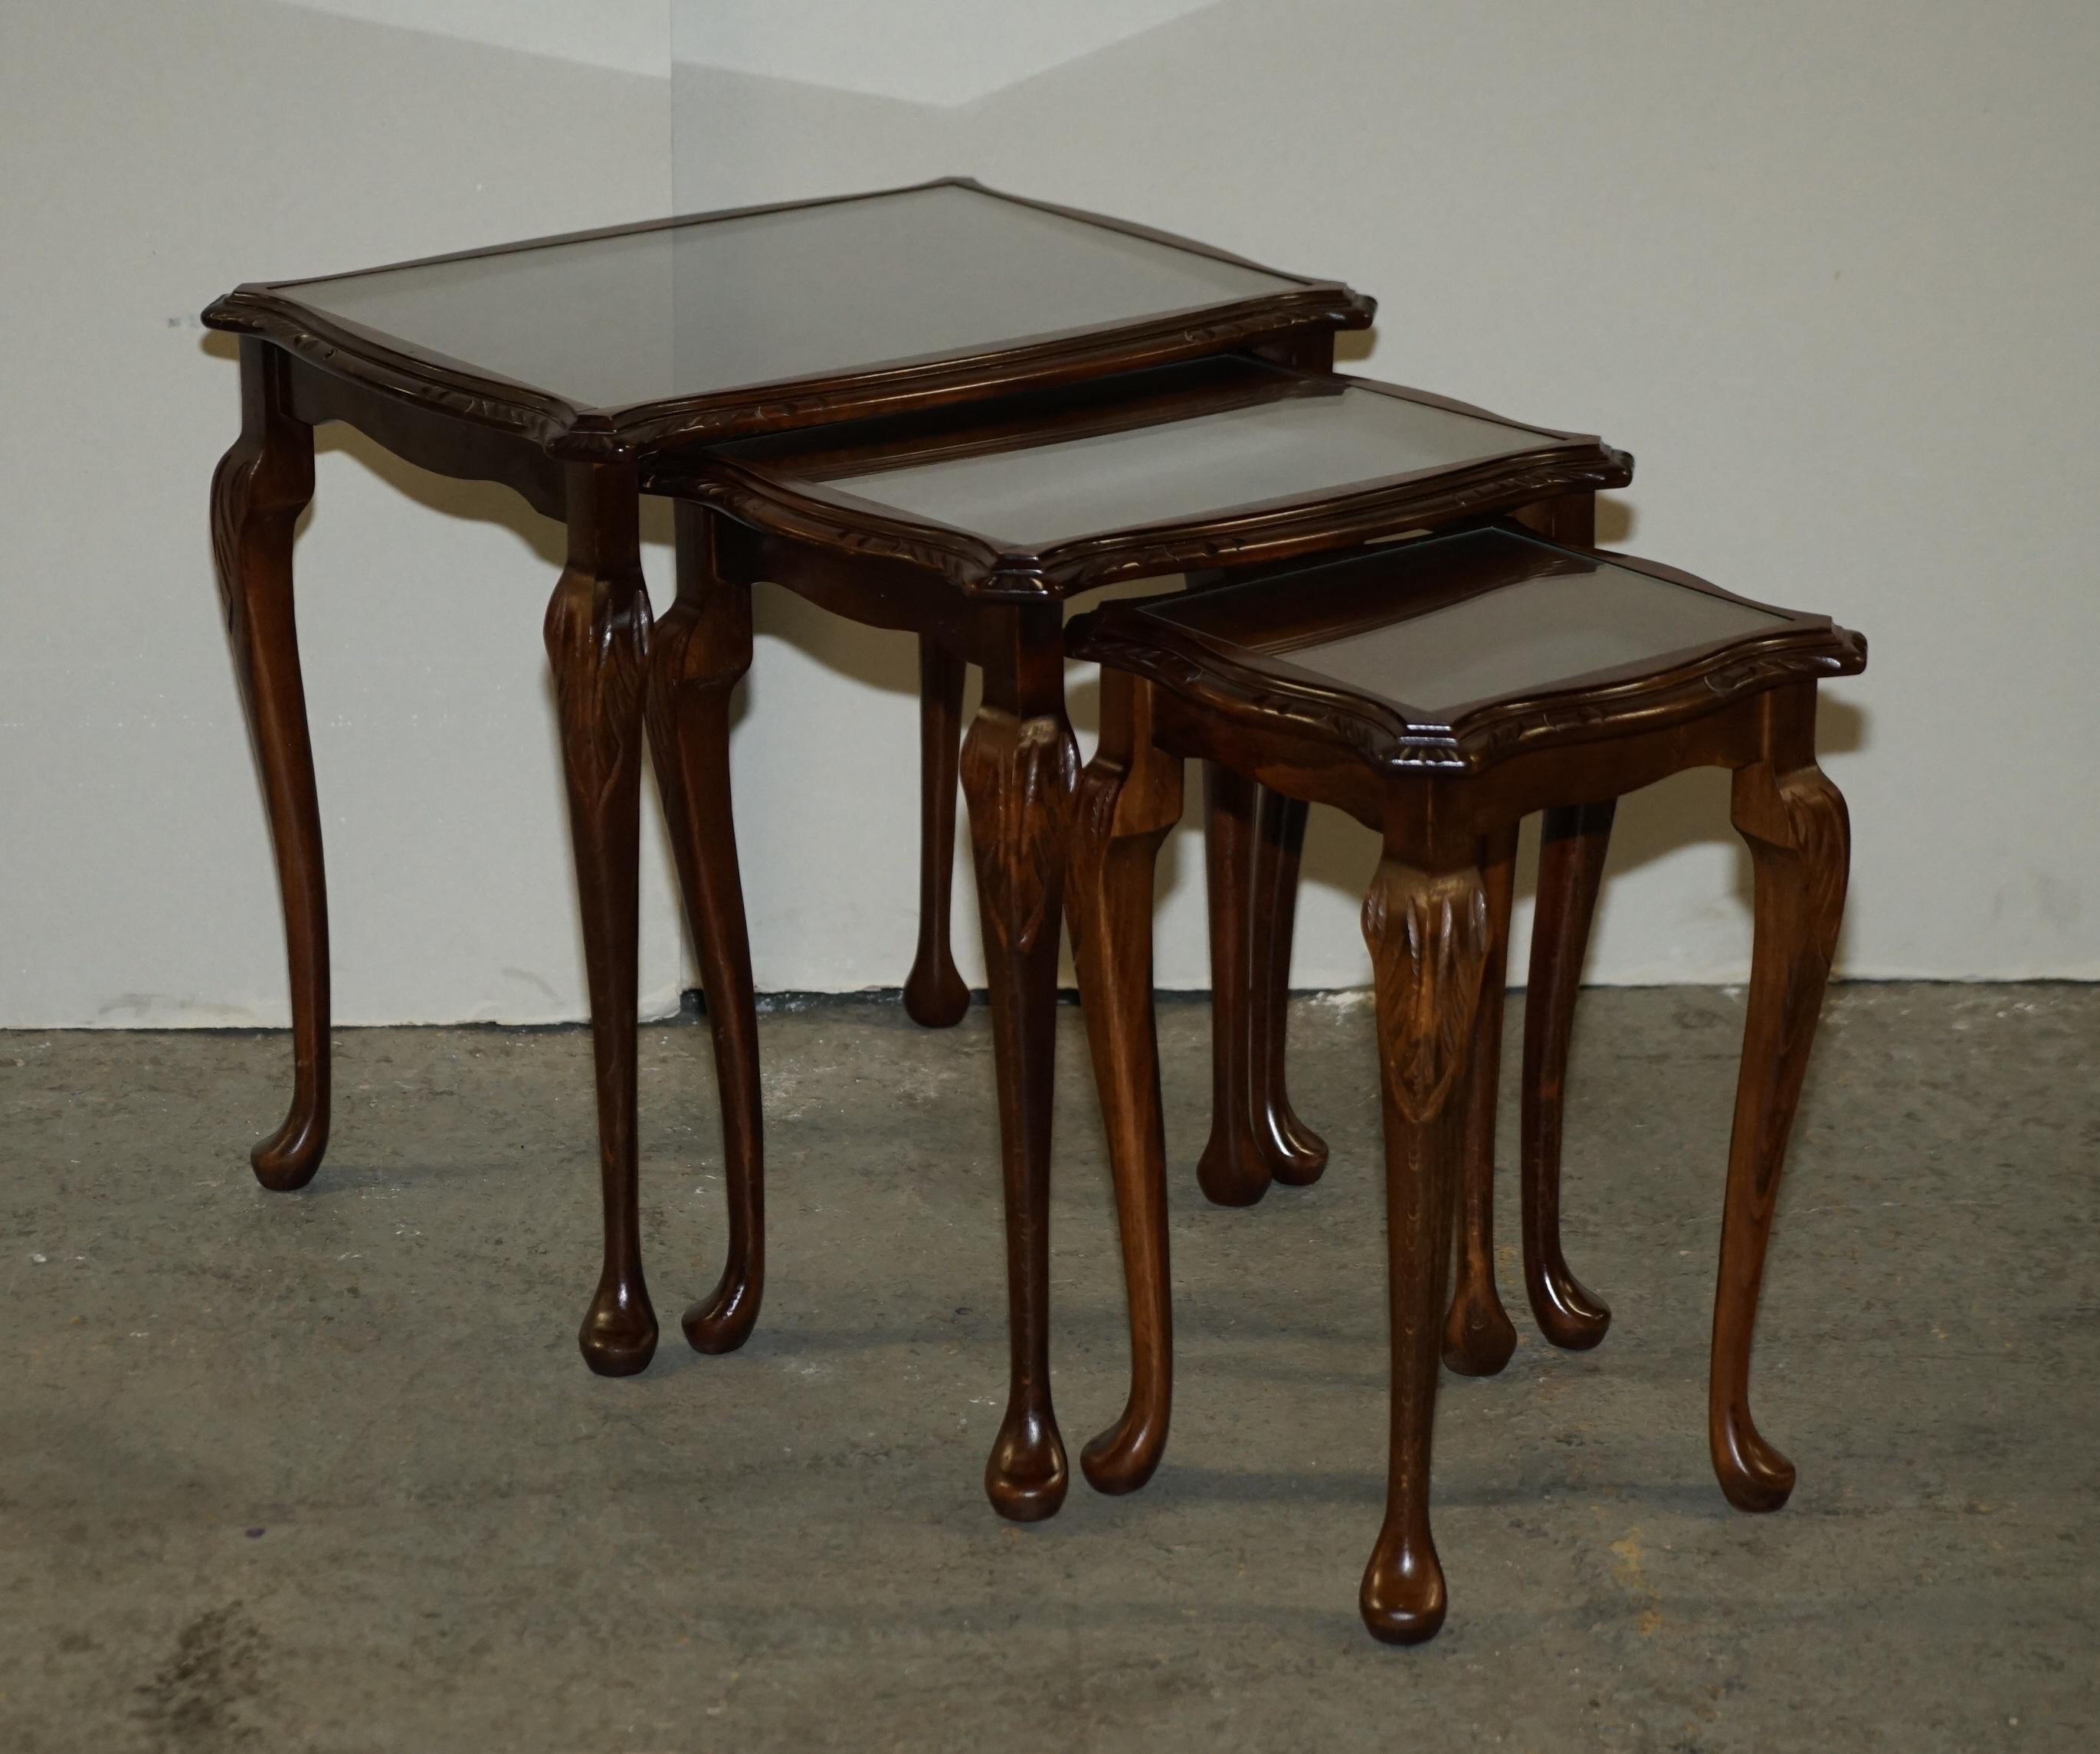 Regency Vintage Nest of 3 Stacking Tables Solid Hardwood, Glass Tops & Carved Legs